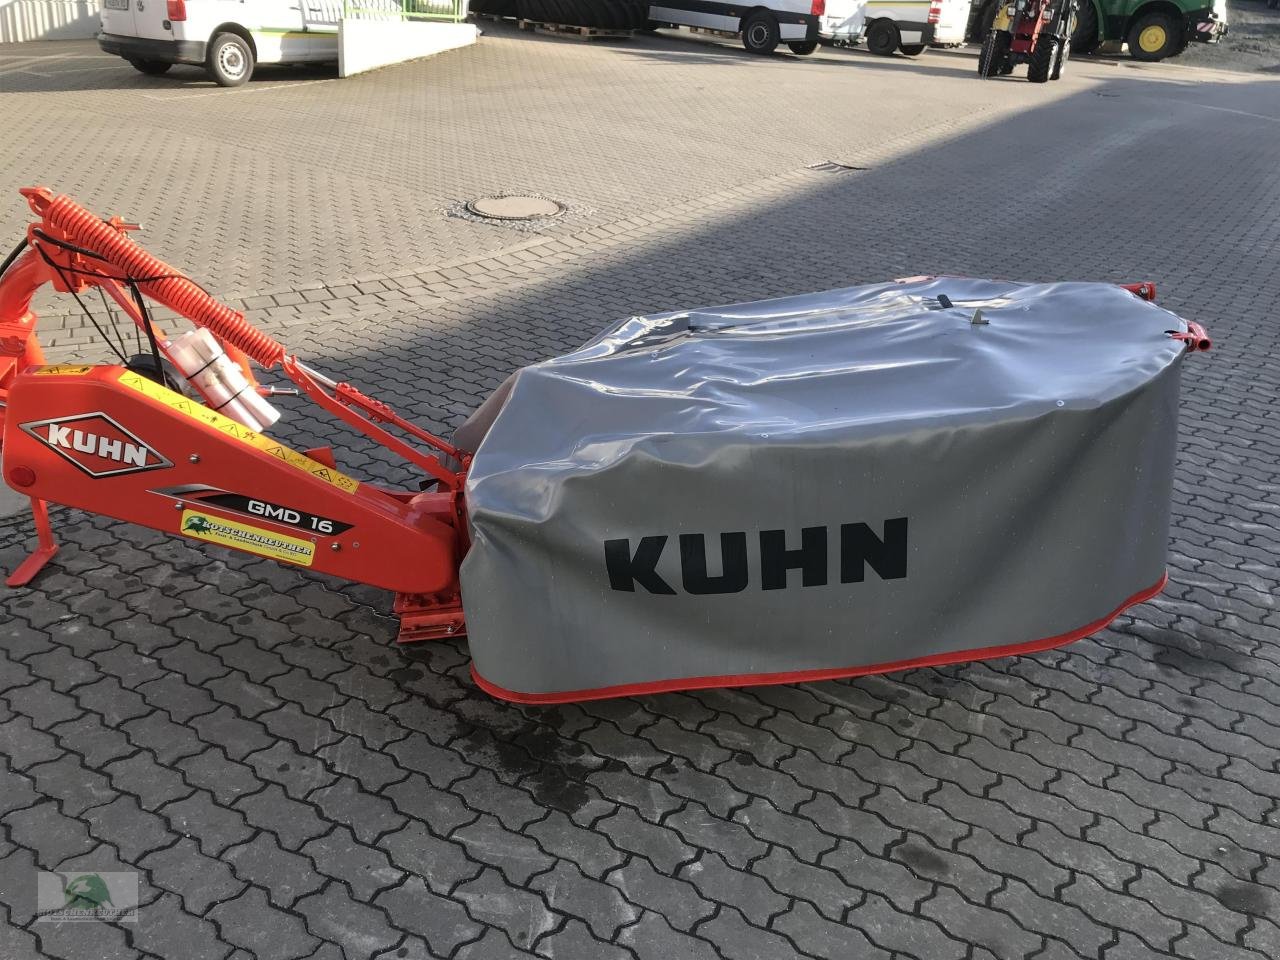 Mähwerk des Typs Kuhn GMD 16, Neumaschine in Plauen (Bild 2)